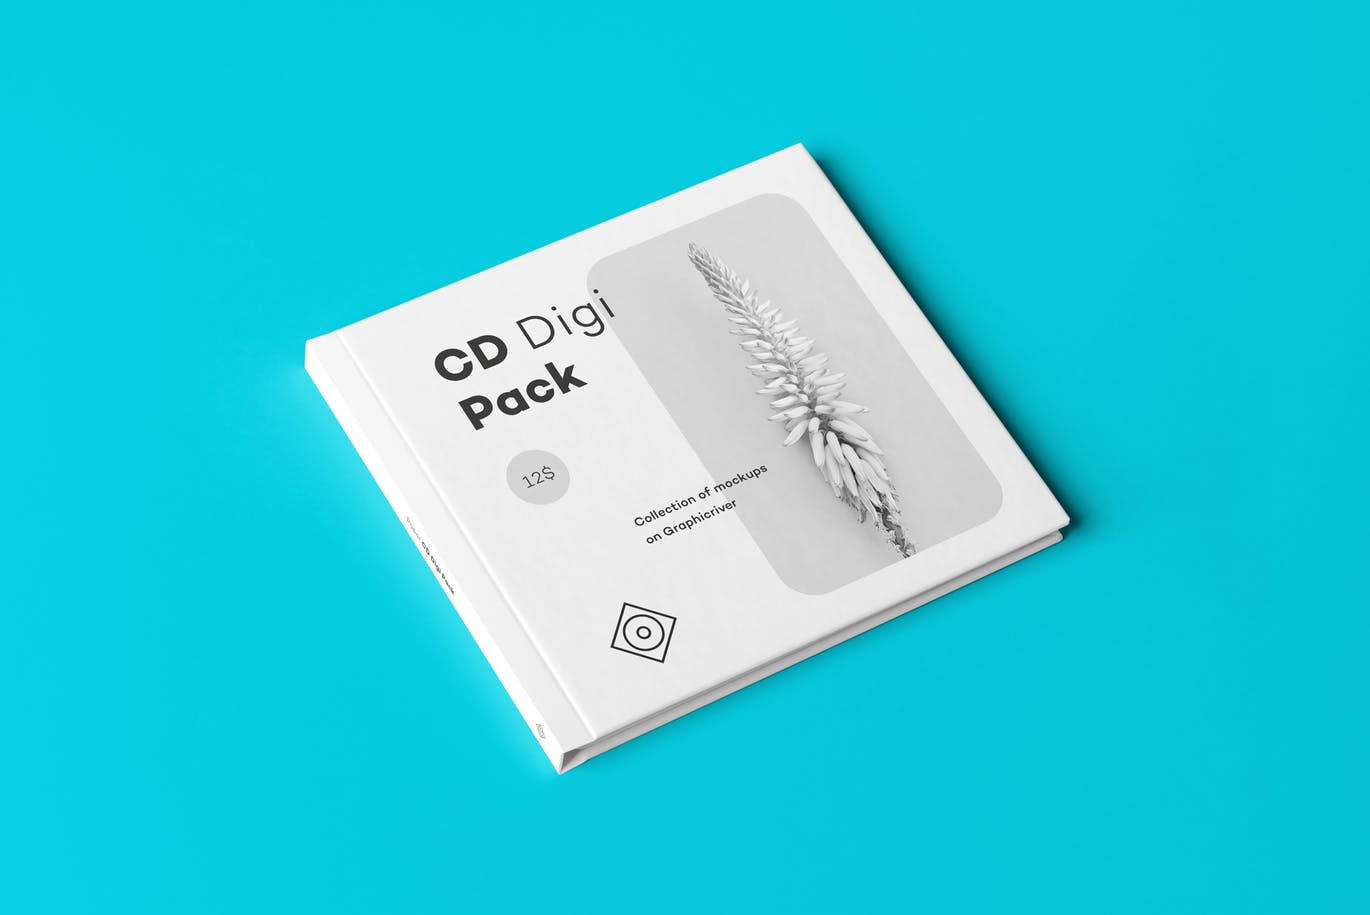 高端逼真质感的精装房地产光盘cd digi pack moc